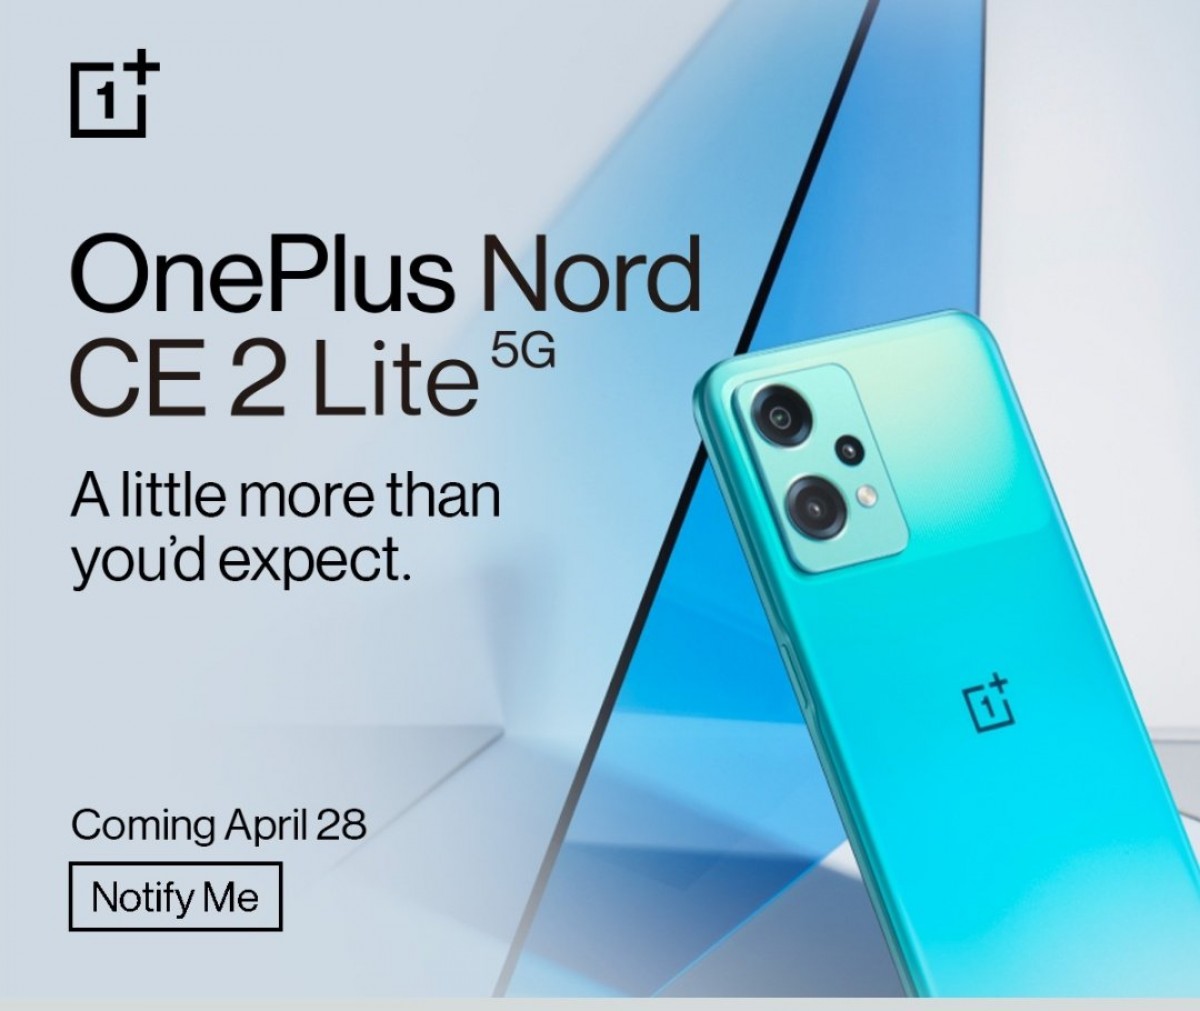 OnePlus Nord CE 2 Lite 5G arrivera en Inde le 28 avril